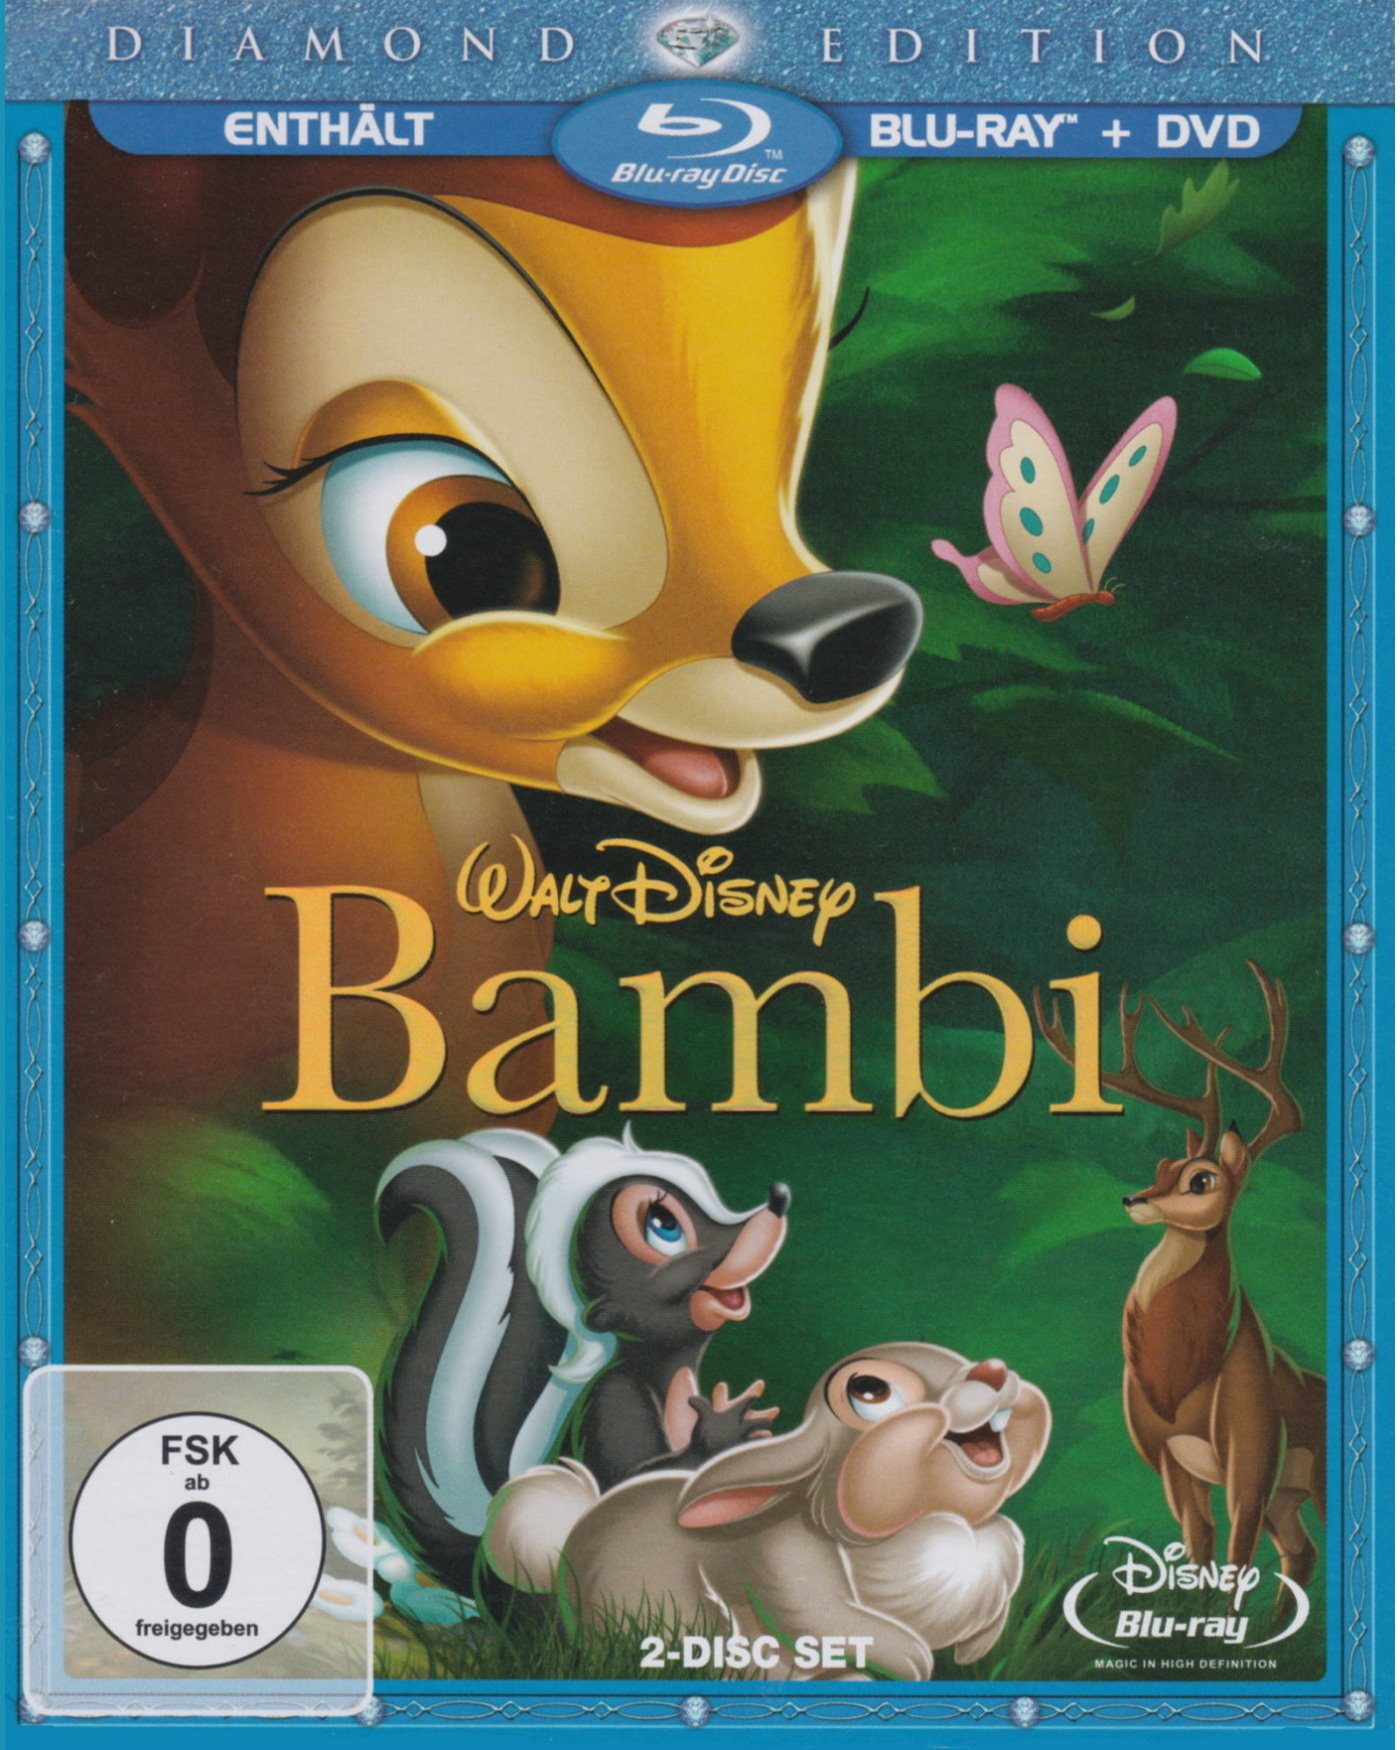 Cover - Bambi.jpg